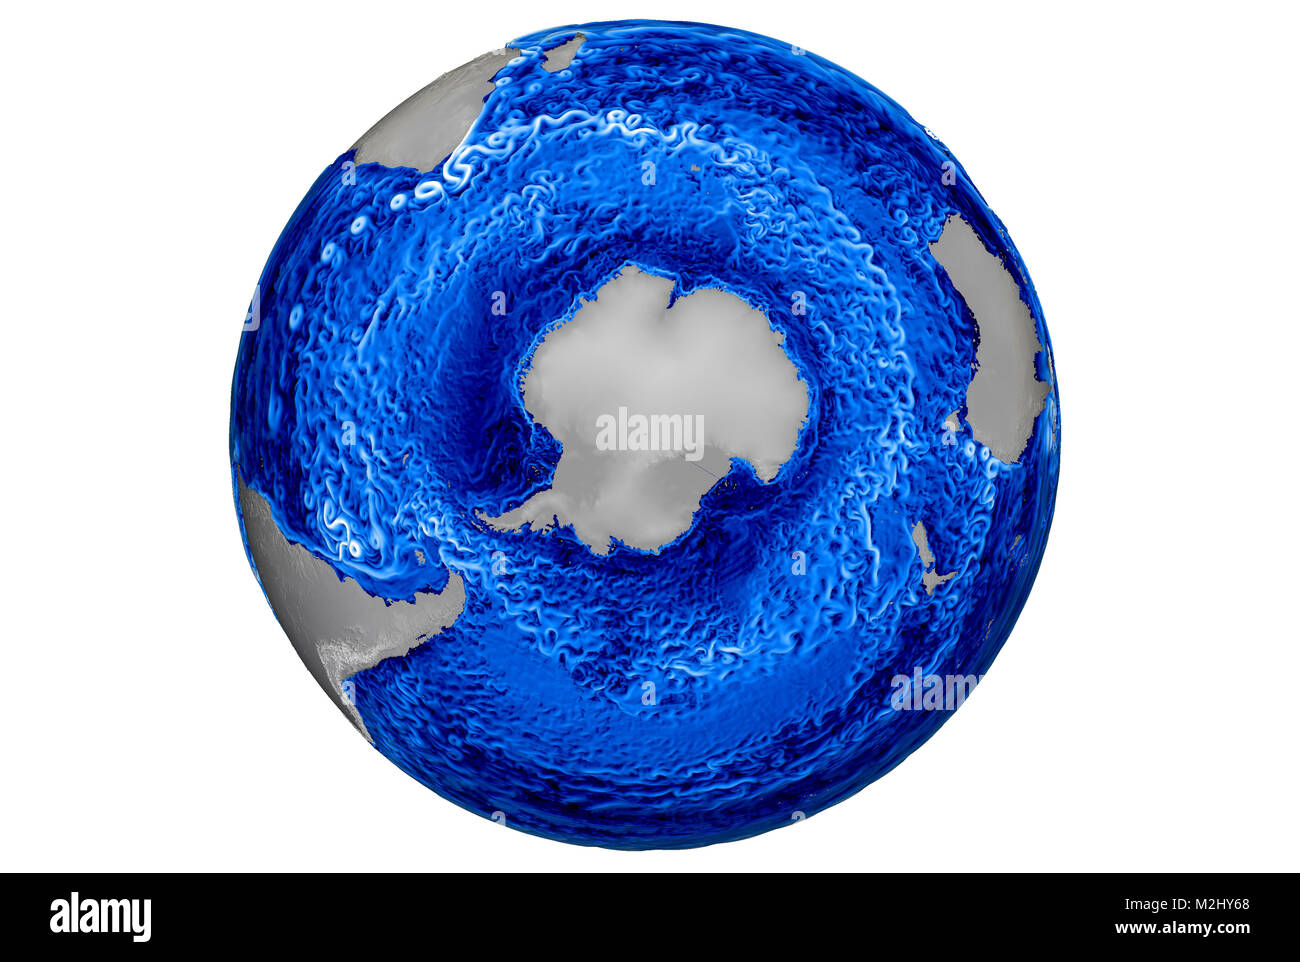 Global Ocean simulazione, le correnti e i vortici, 2015 Foto Stock